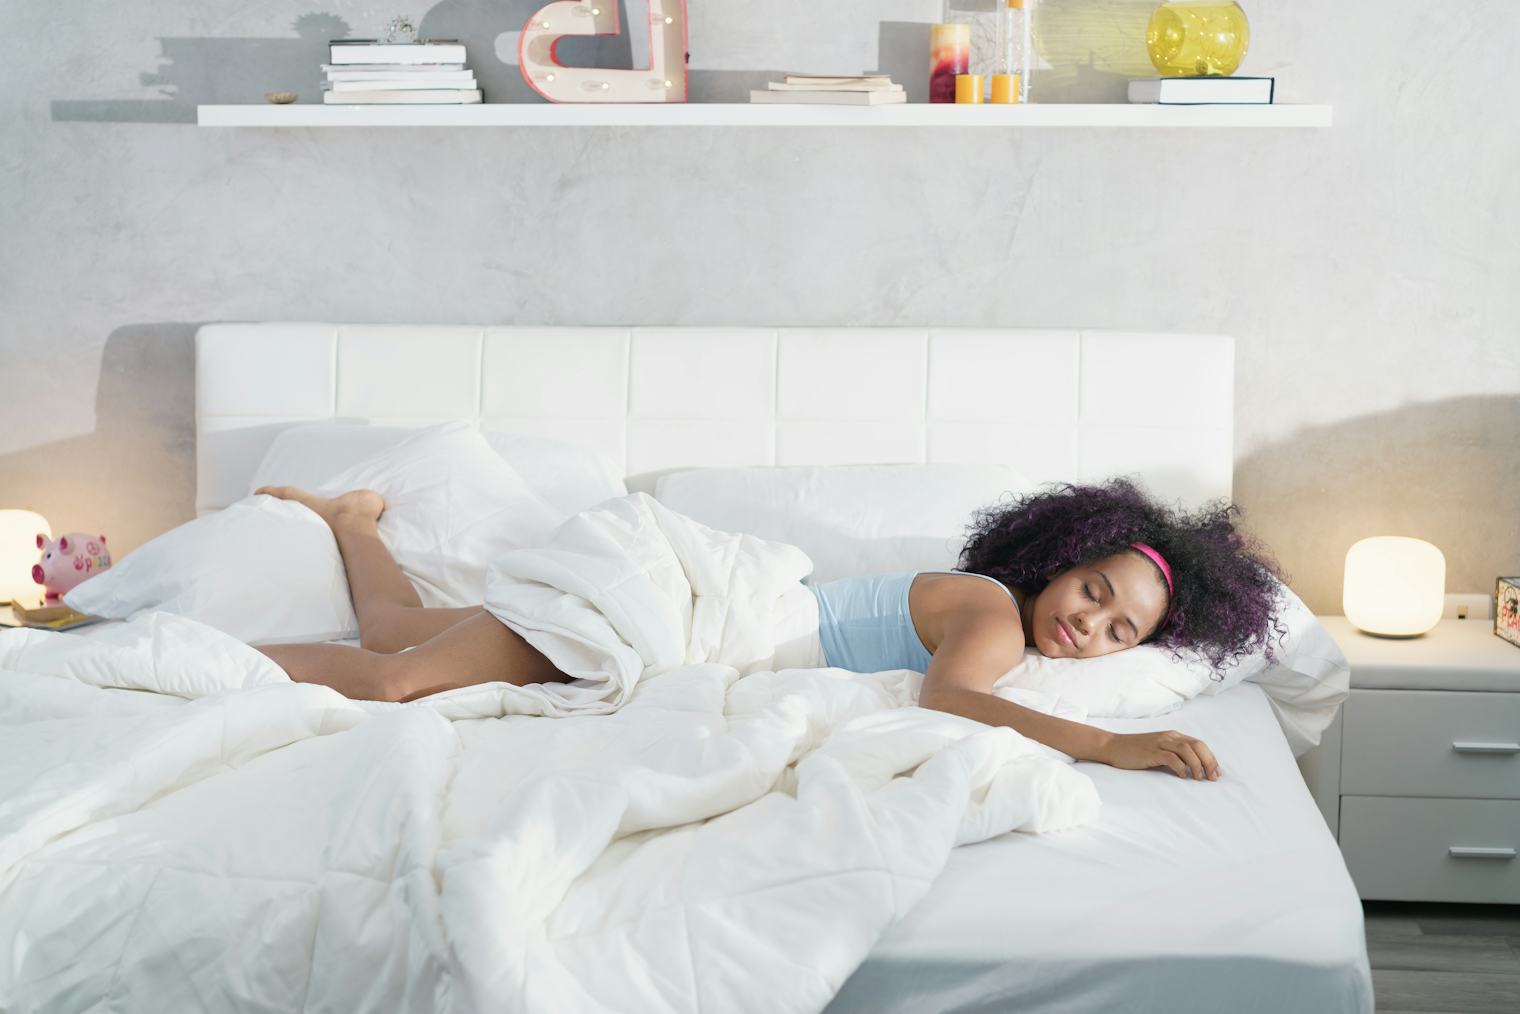 does mattress affect sleep quality